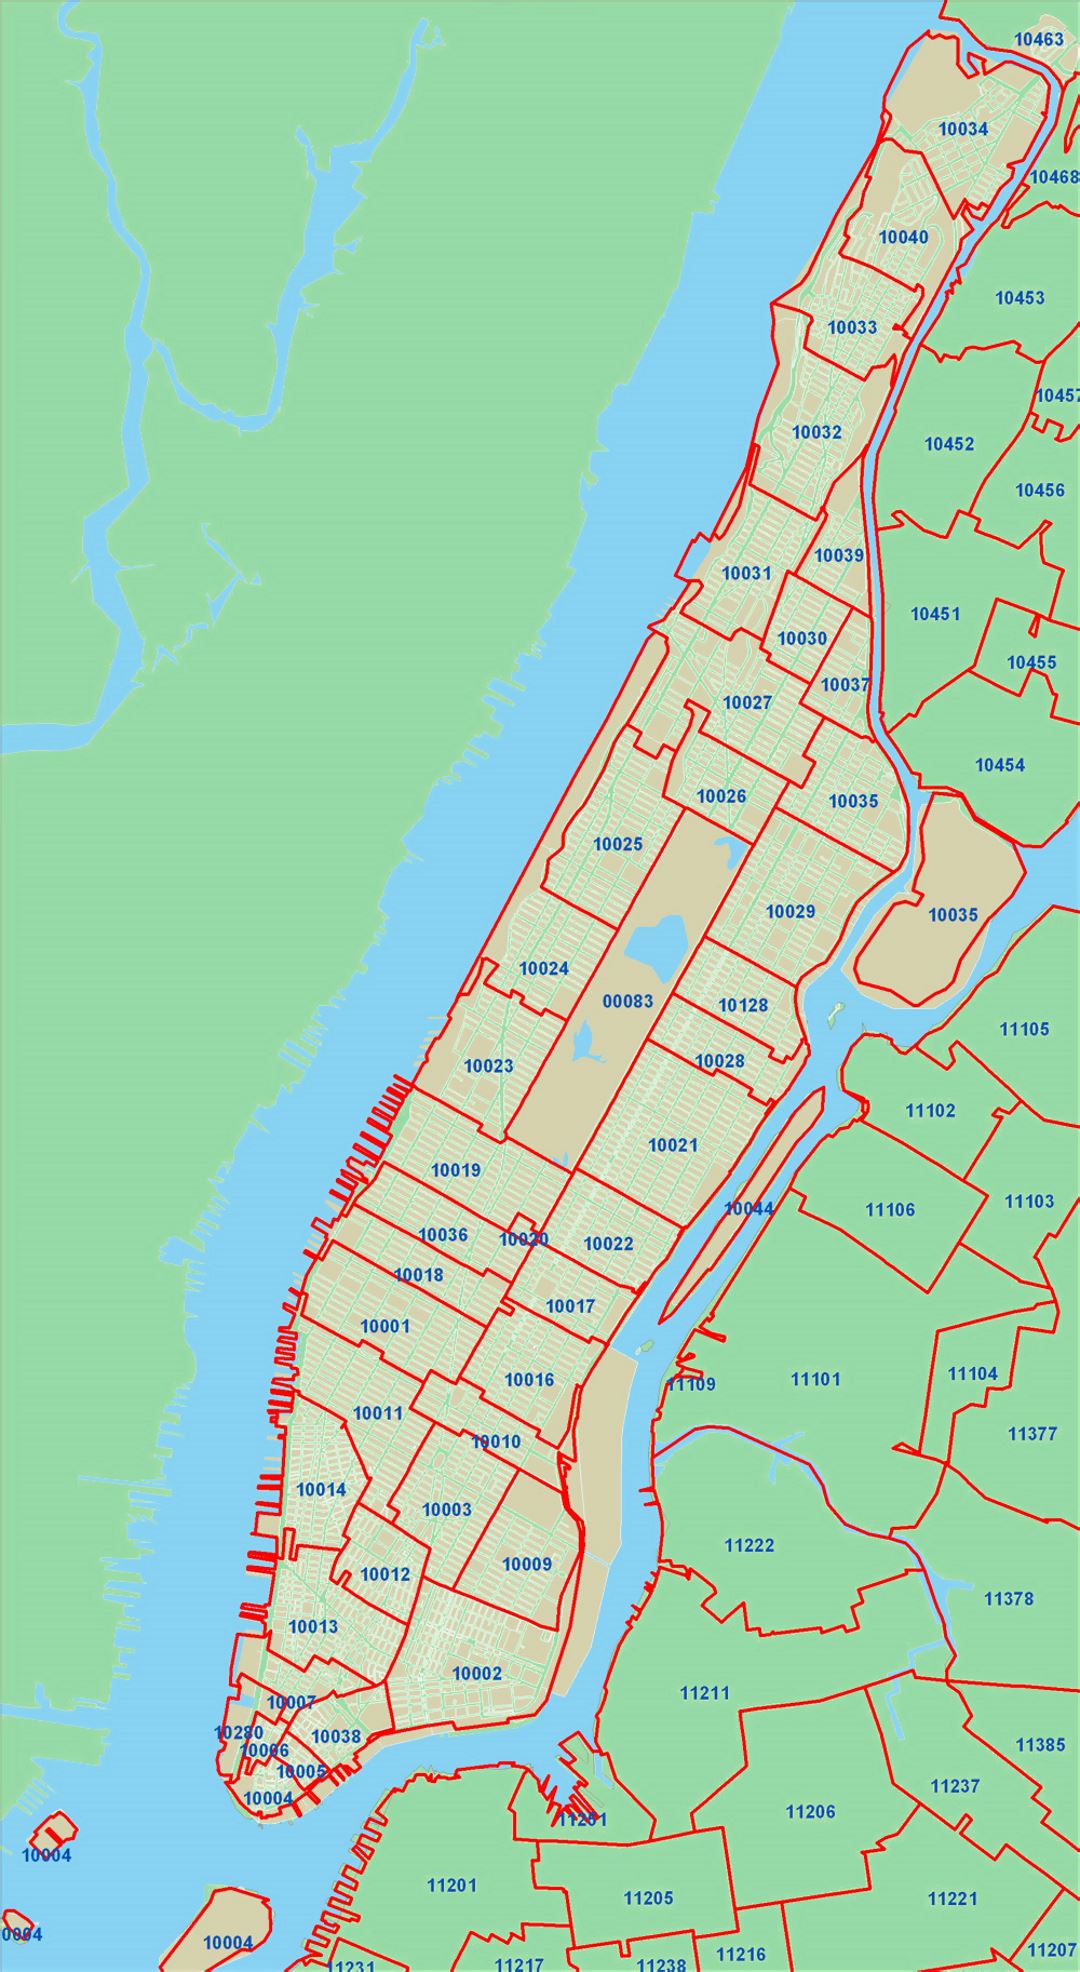 Подробная карта почтовых индексов города Нью-Йорка